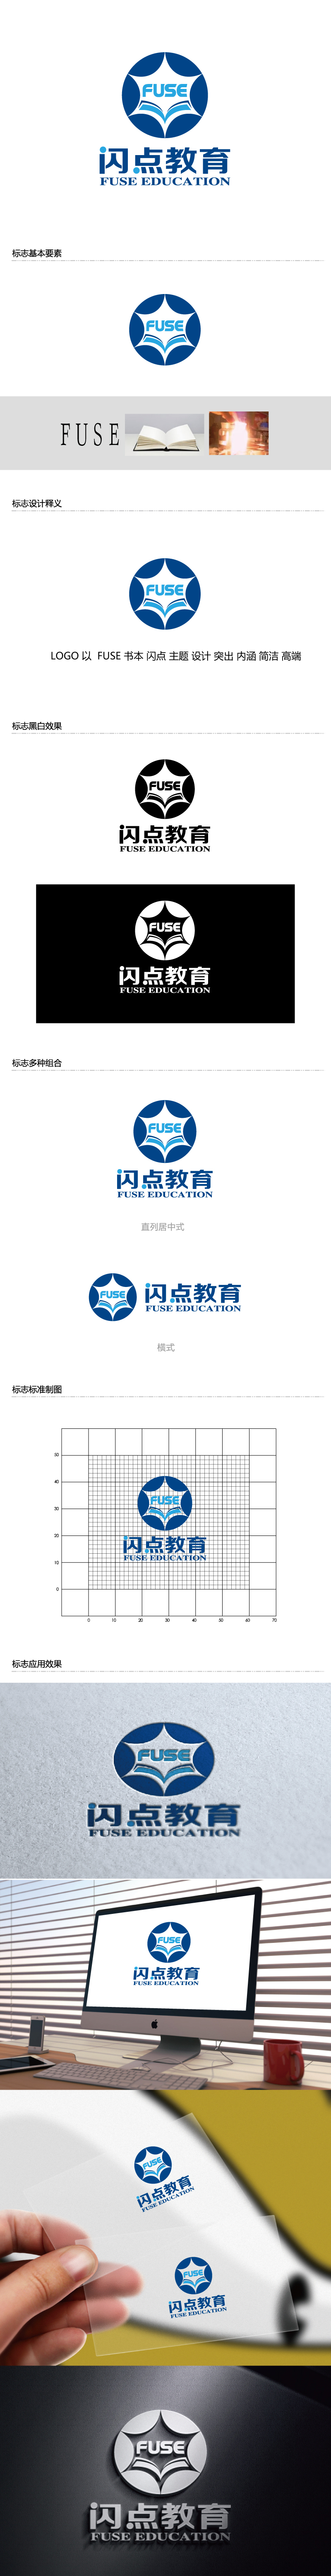 张俊的闪点（北京）教育咨询有限公司 FUSE Educationlogo设计